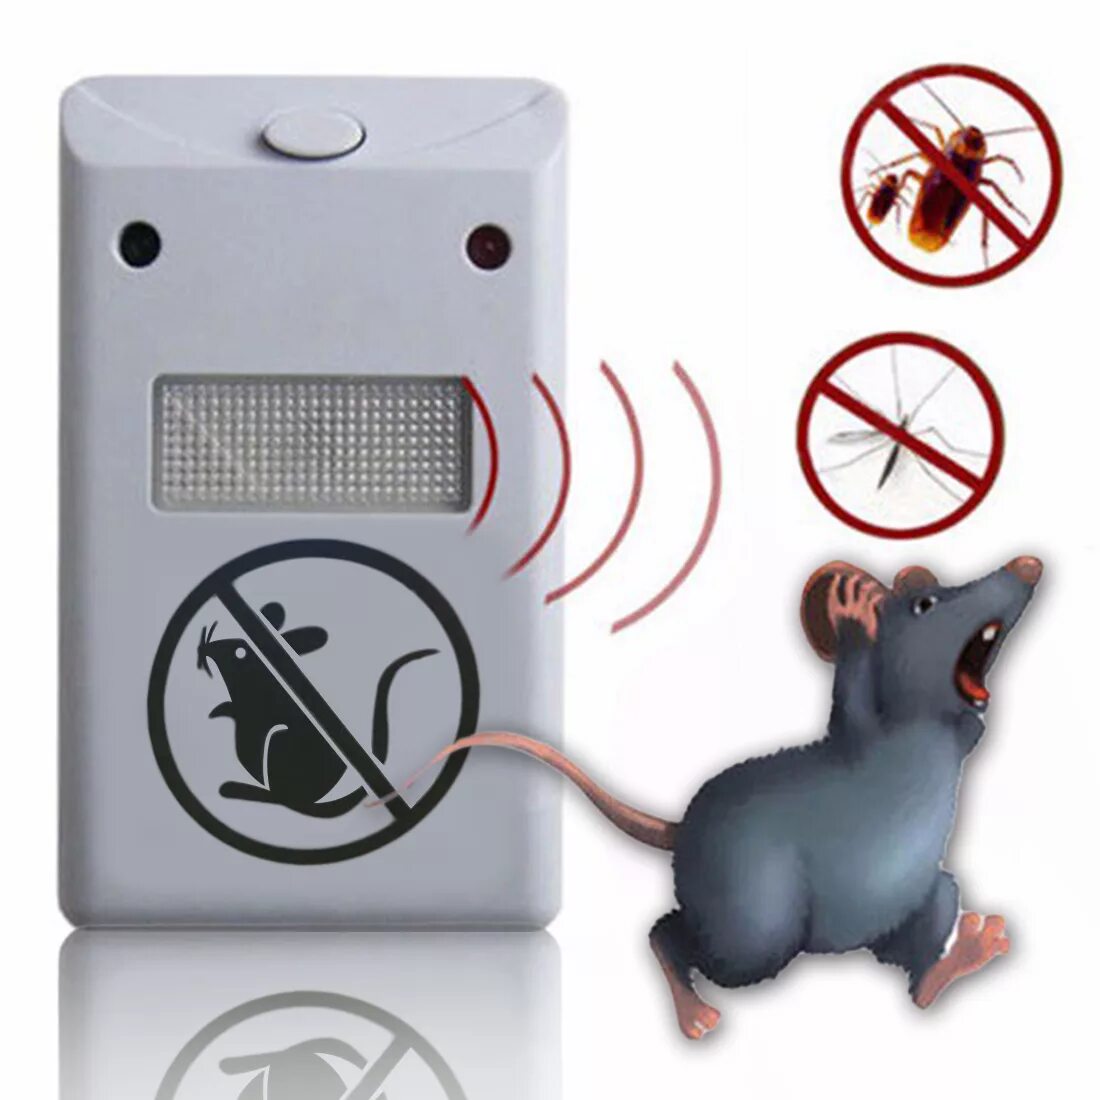 Звук мышей в доме. Электро отпугиватель грызунов. Электрический отпугиватель мышей и крыс в доме.